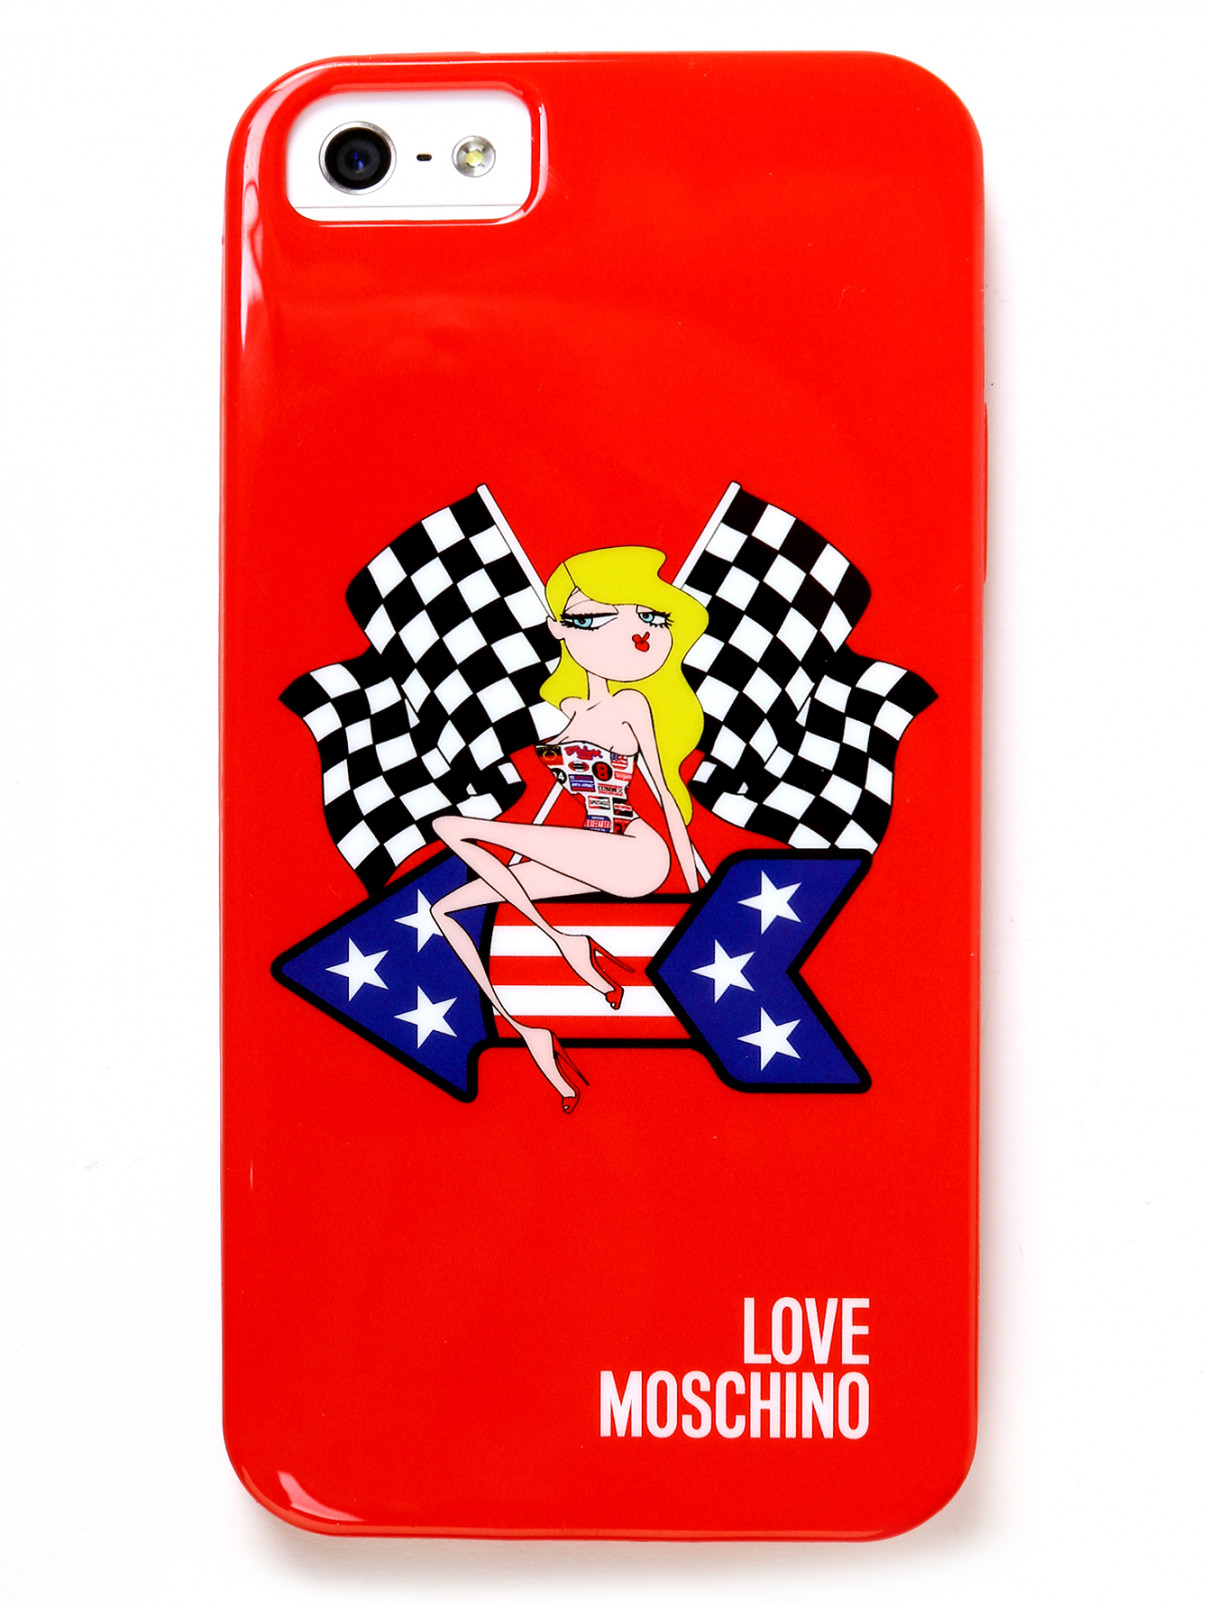 Чехол для iPhone 5/5S Love Moschino  –  Общий вид  – Цвет:  Красный